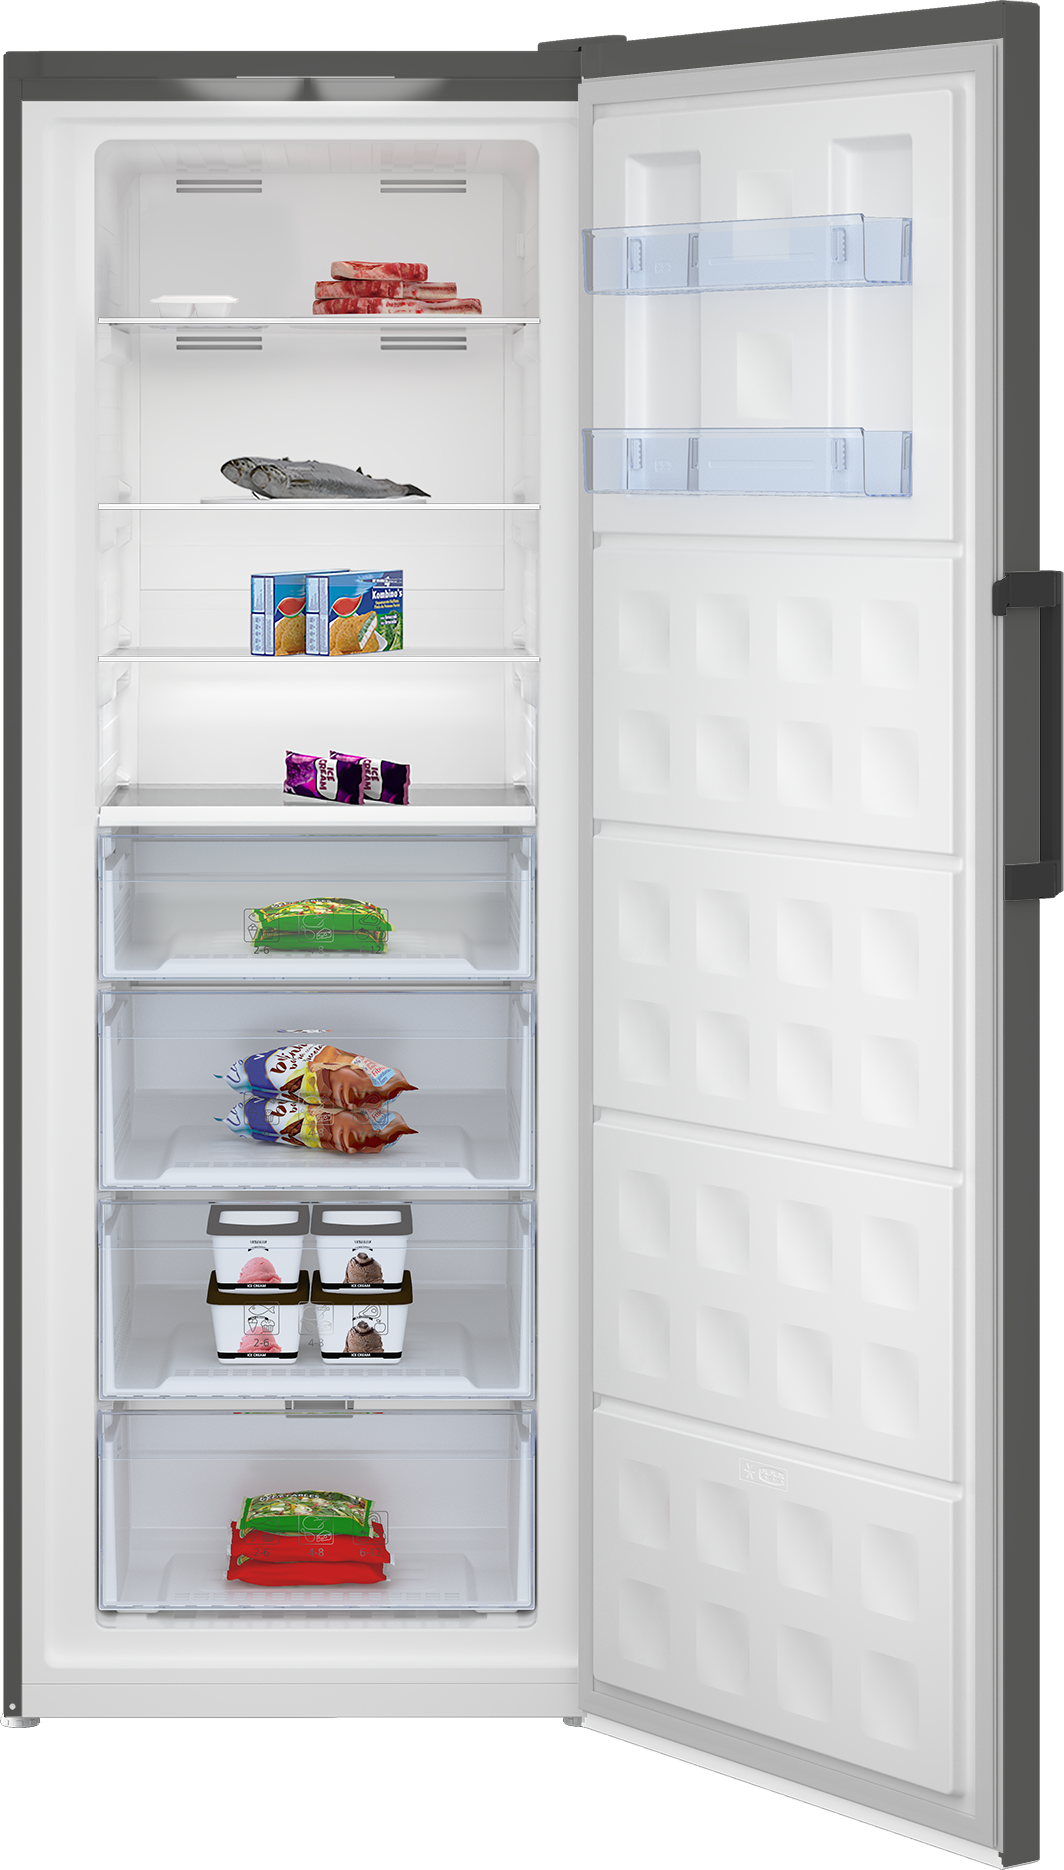 silver fridge open